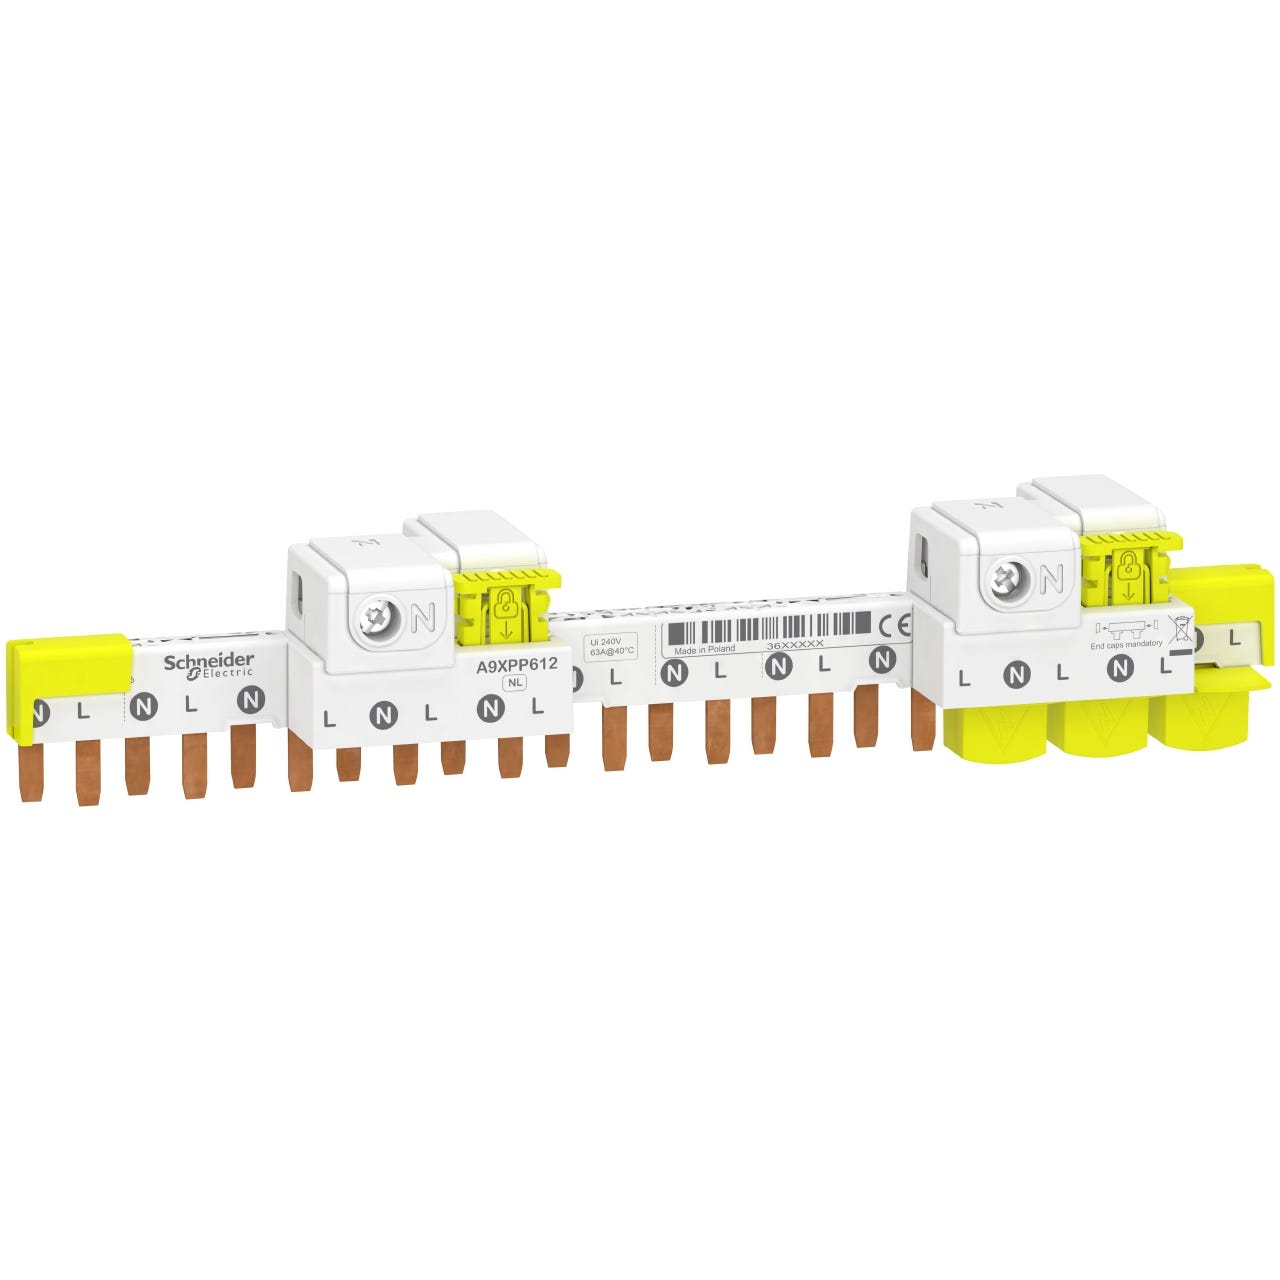 peigne - idt40 - 1p+n - 12 modules - avec connecteur - schneider electric a9xpp612 0